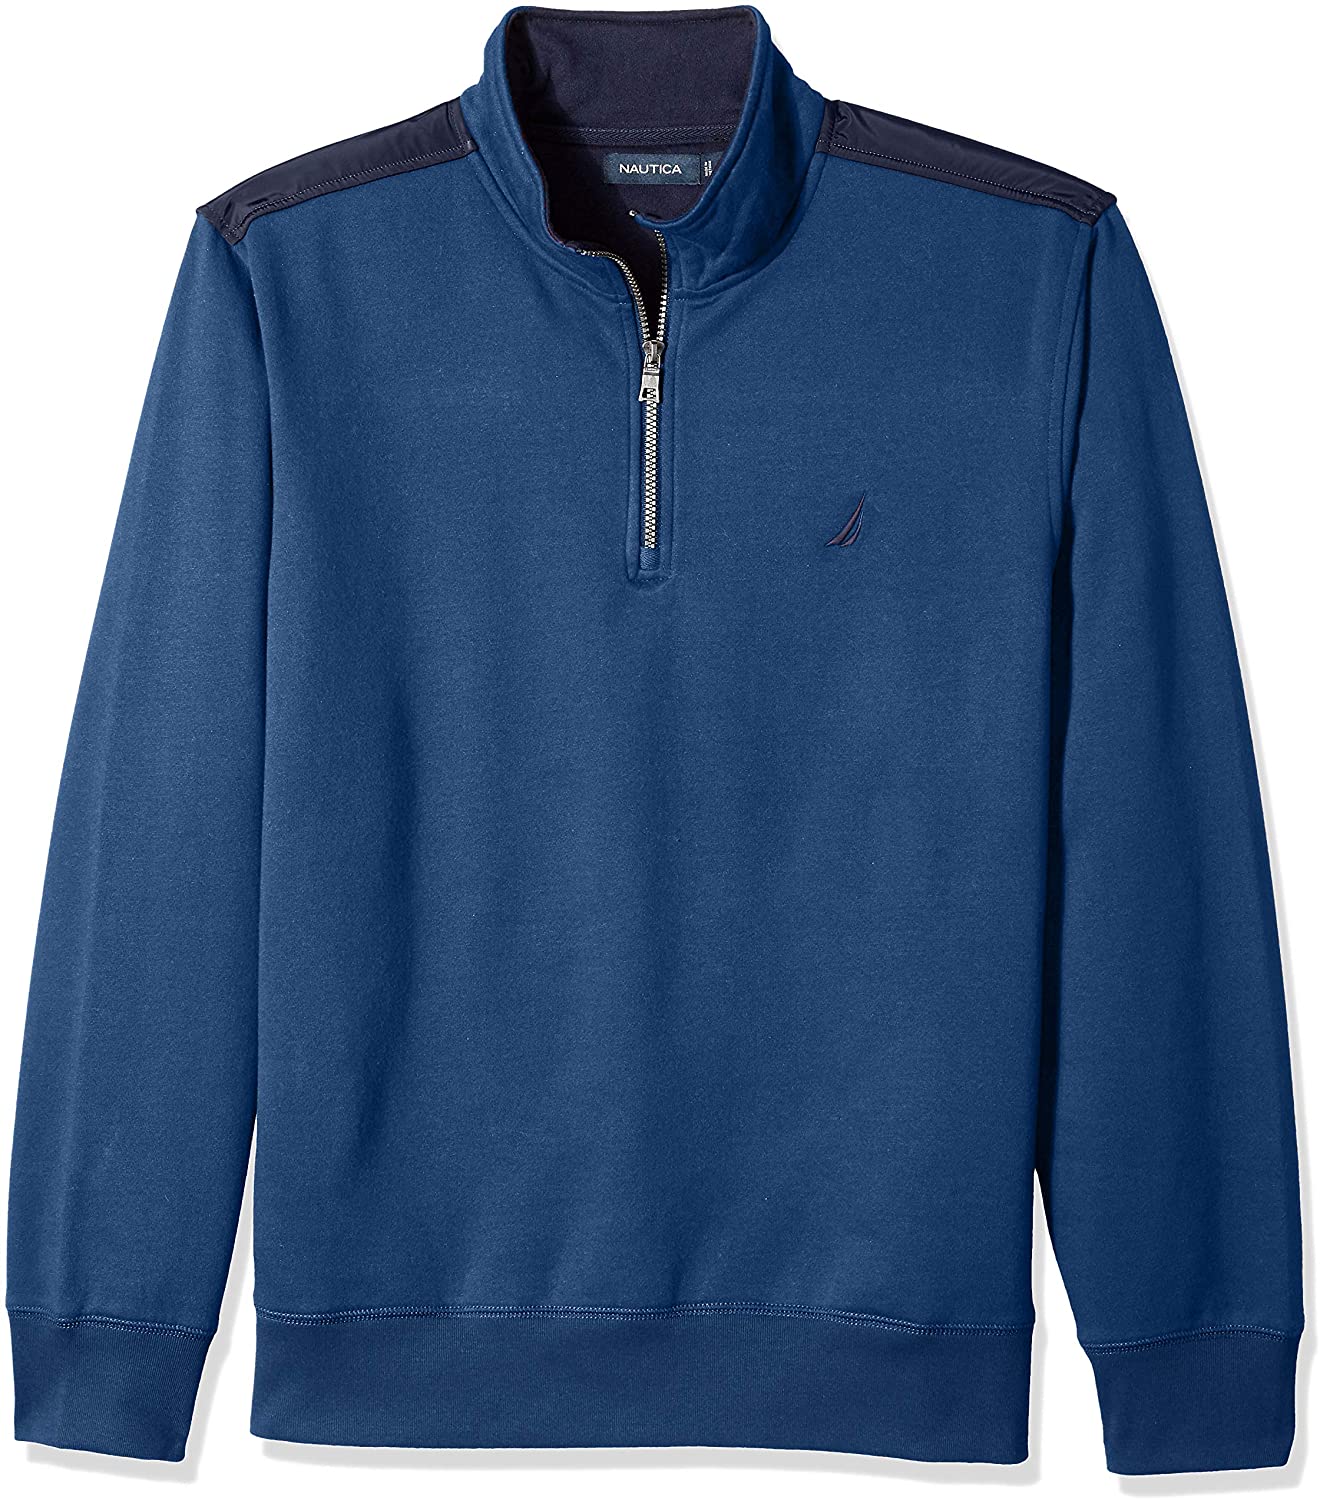 Details about   Nautica Men's 1/4 Zip Pieced Fleece Sweatshirt